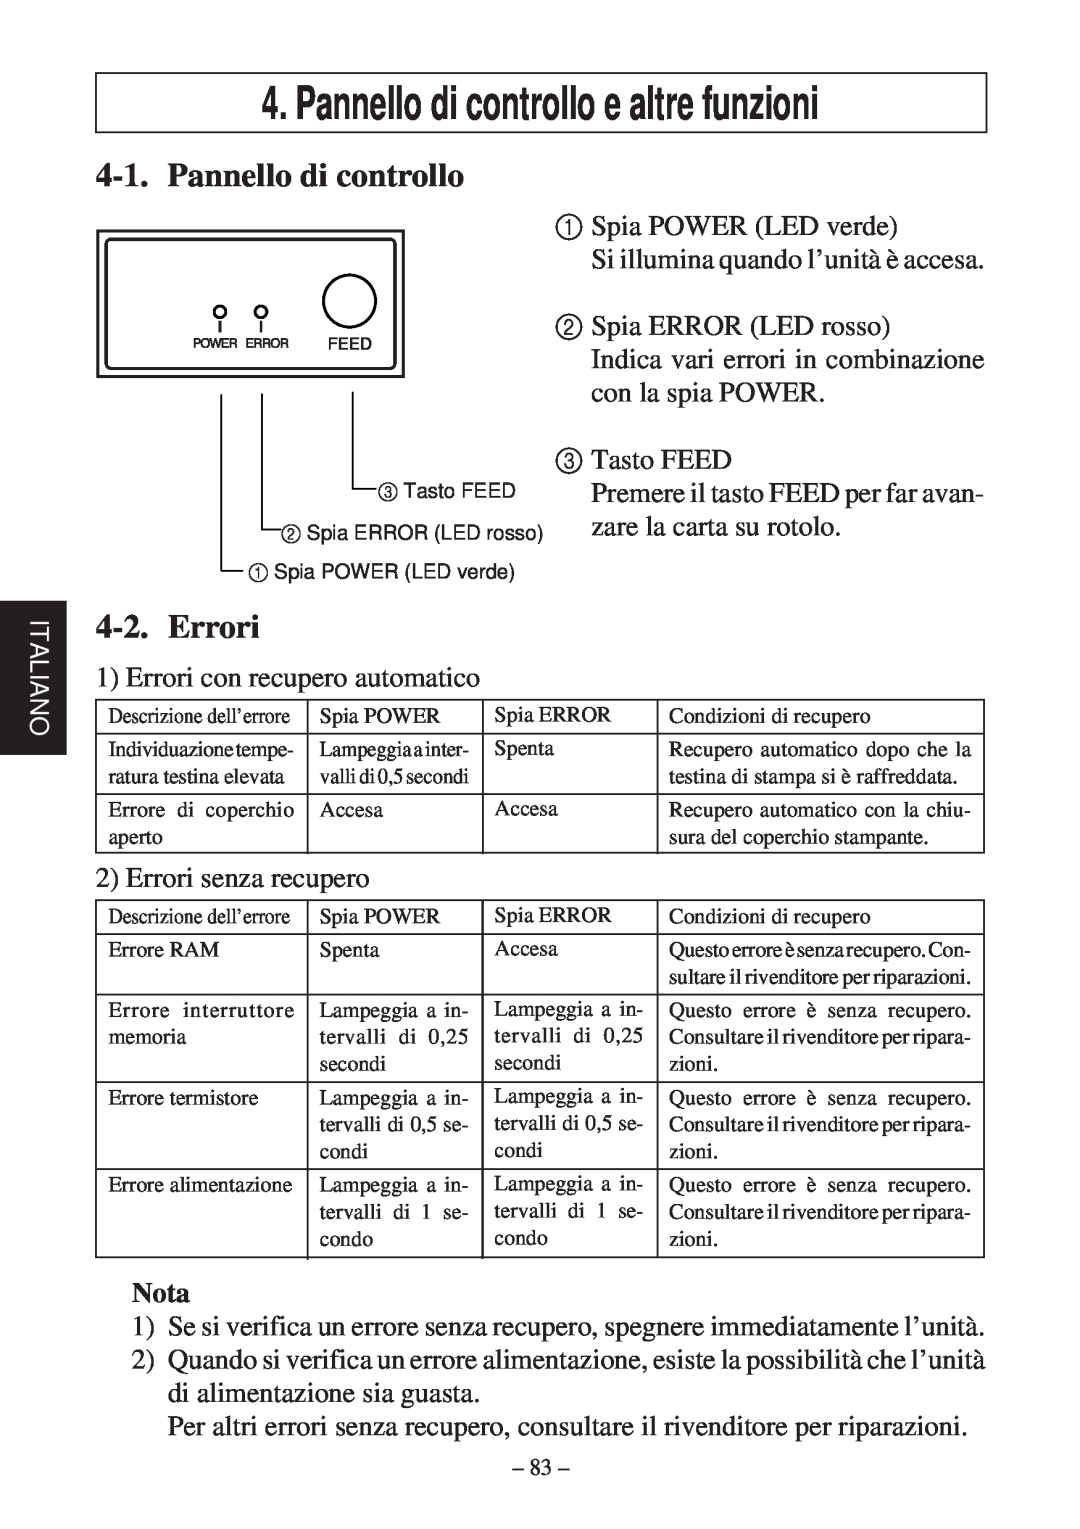 Star Micronics TSP600 user manual Pannello di controllo e altre funzioni, Errori, Nota 